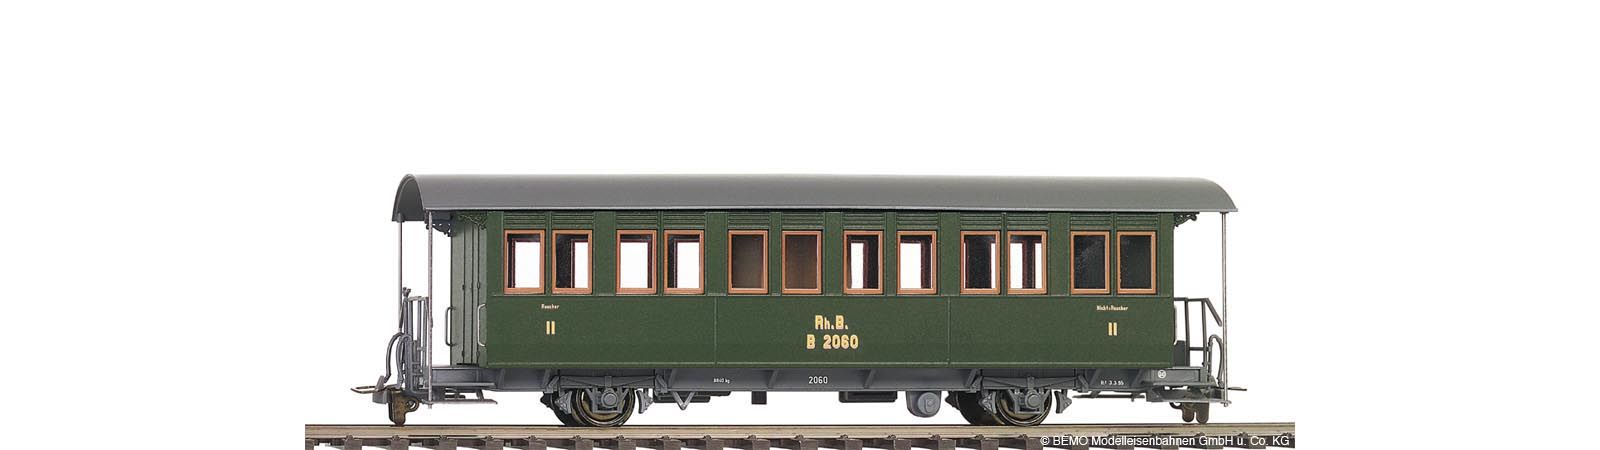 3230140 Bemo - Personenwagen RhB B 2060 Zweiachser historischer Dampfzug - Spur H0m